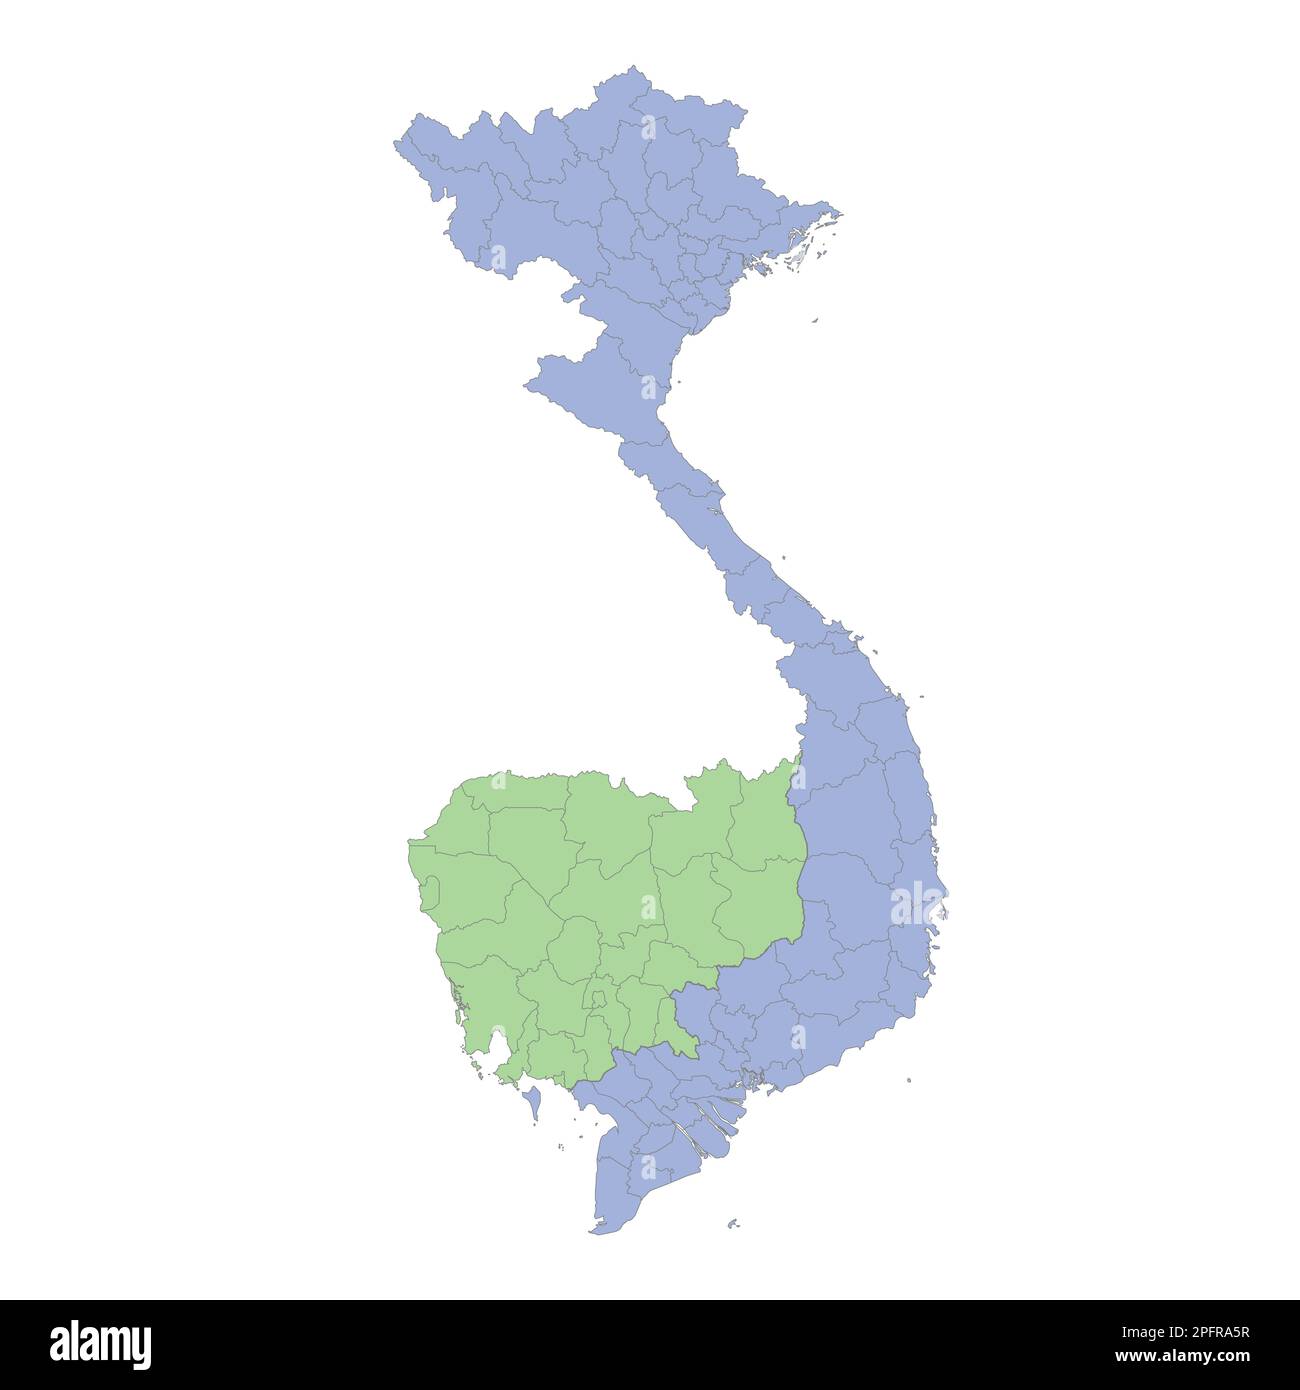 Mappa politica di alta qualità del Vietnam e della Cambogia con i confini delle regioni o province. Illustrazione vettoriale Illustrazione Vettoriale